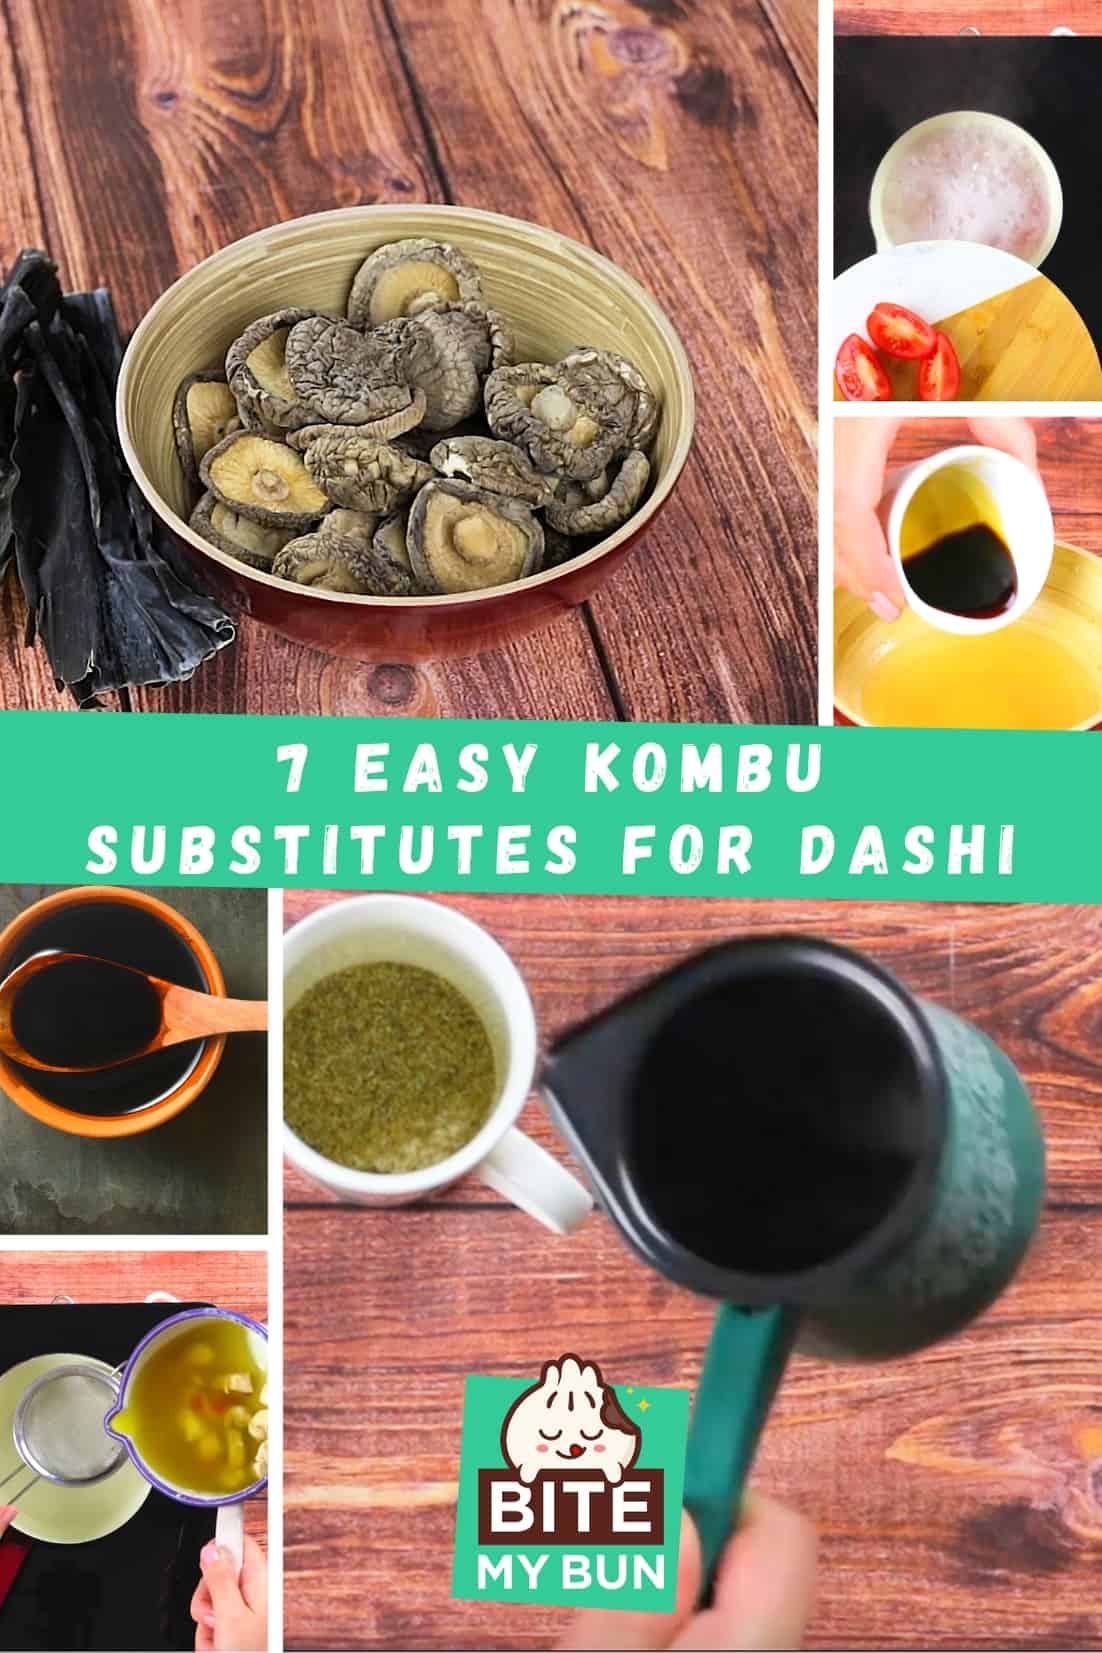 7 fáciles sustitutos del kombu para dashi